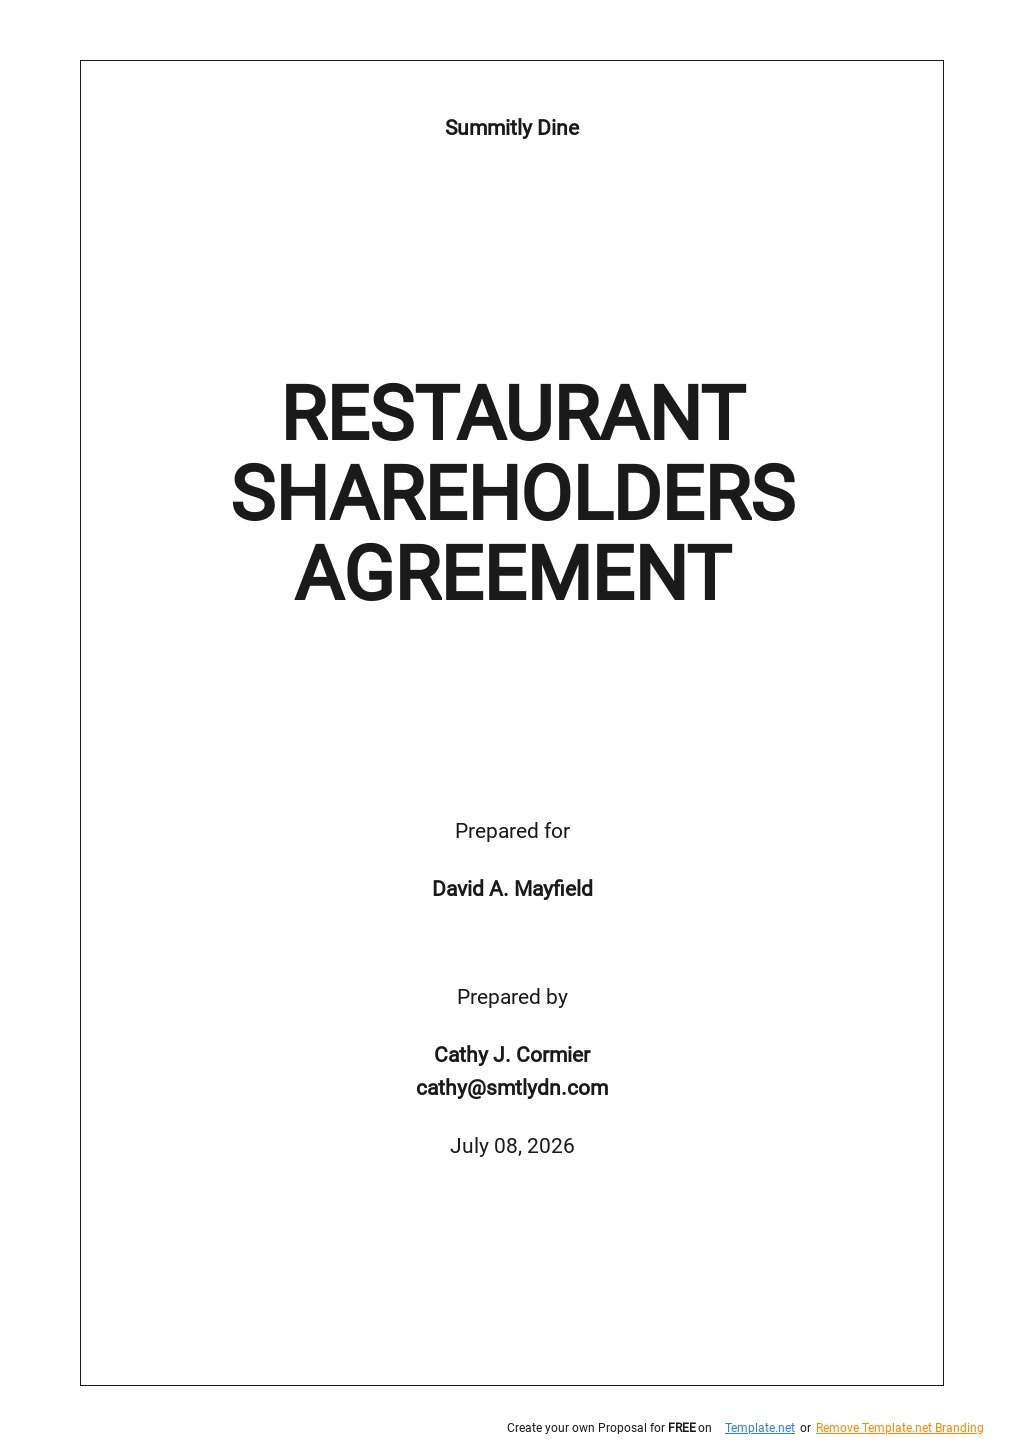 Restaurant Shareholders Agreement Template.jpe